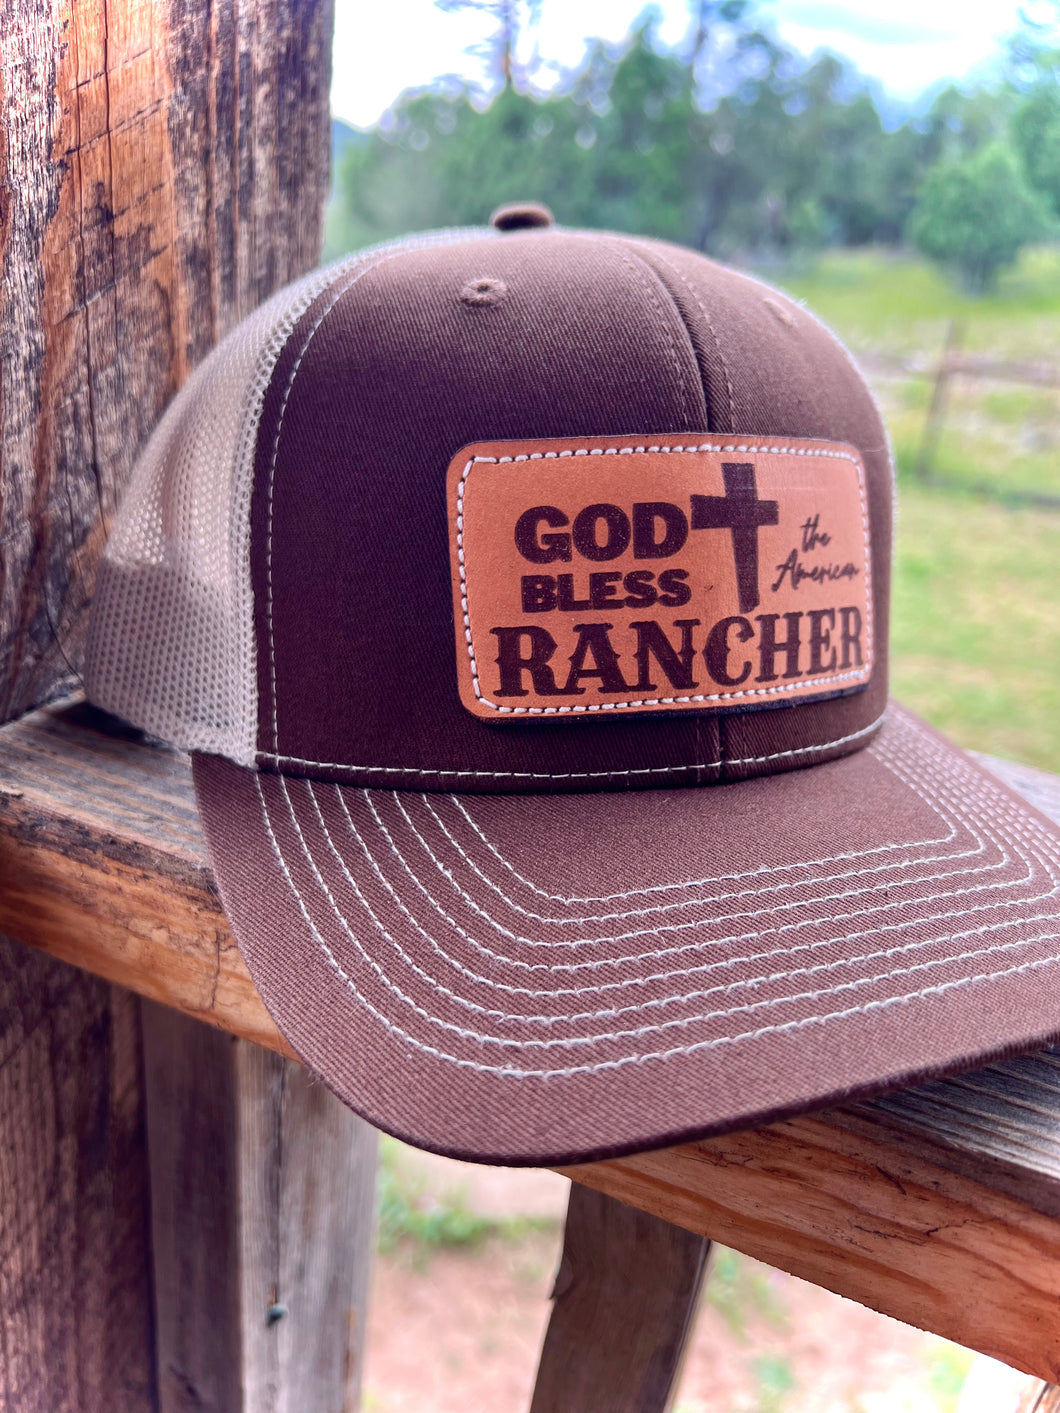 Ranchy Patch Caps